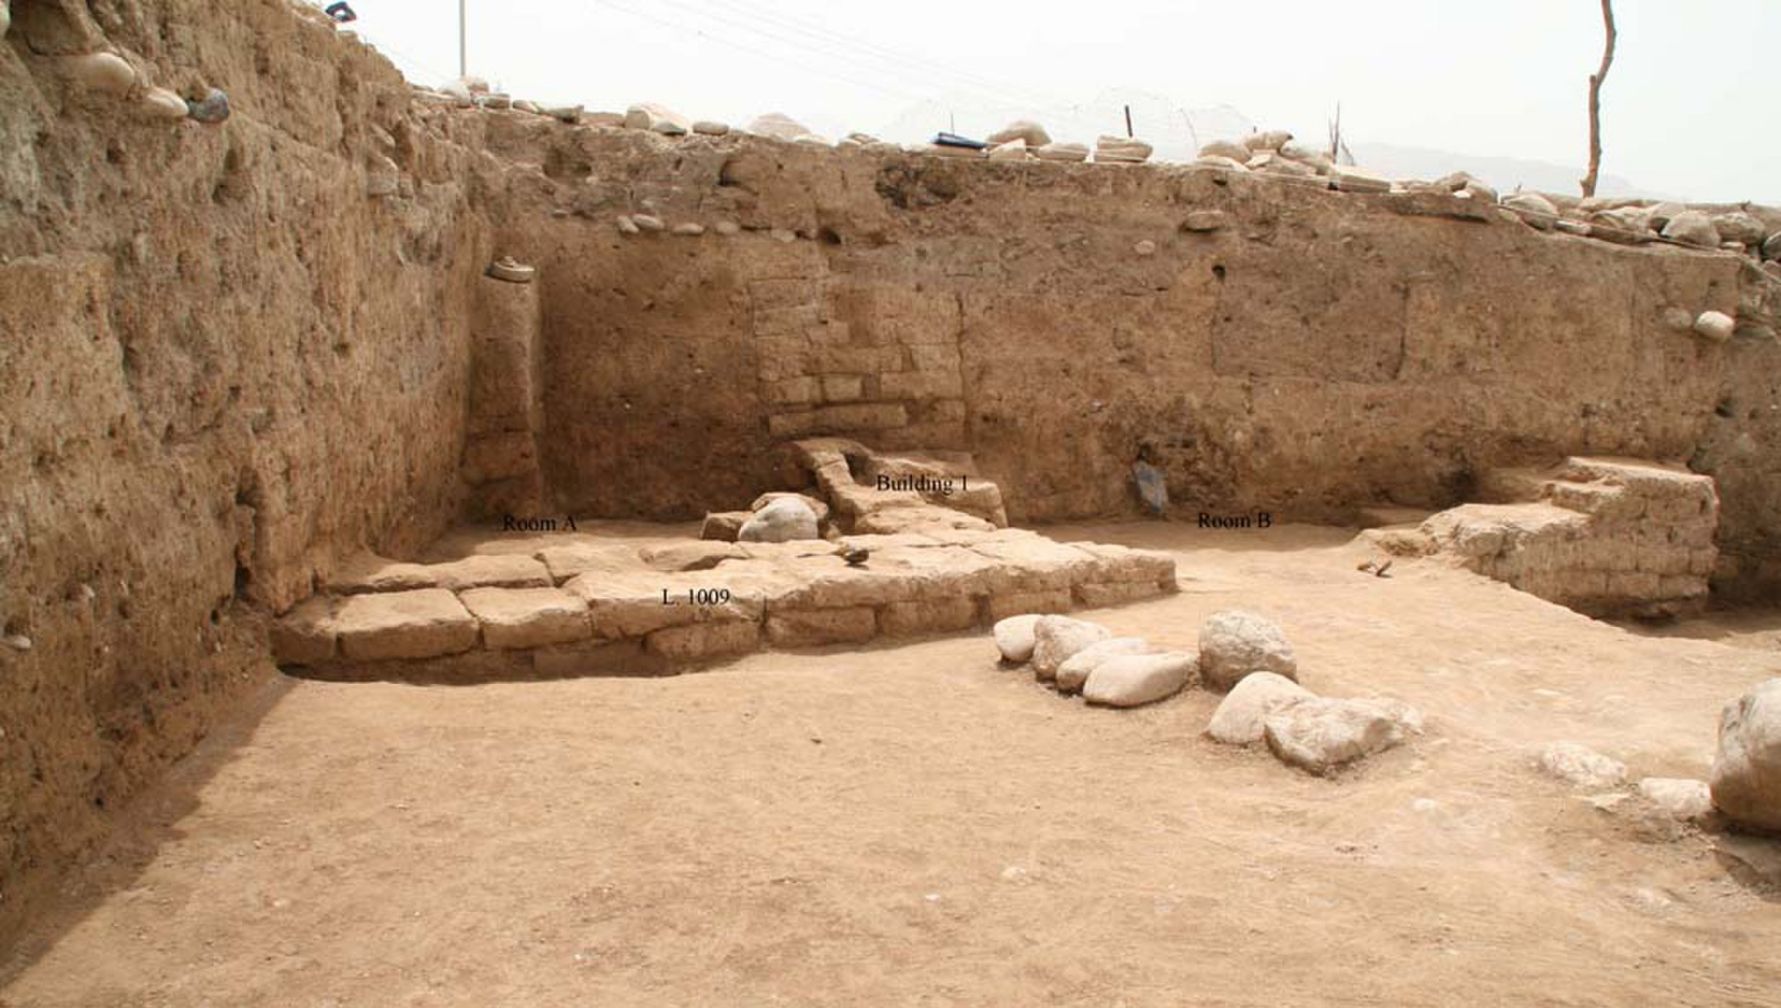 Archeologové v oblasti Kurdistánu na severu Iráku objevili starověké město, které se jmenovalo „Idu“. Místo bylo obsazeno již v období neolitu, kdy se na Blízkém východě poprvé objevilo zemědělství, a největšího rozsahu město dosáhlo před 3,300 až 2,900 lety. Zde zobrazená budova je domácí stavba s nejméně dvěma místnostmi, která může pocházet z relativně pozdního období života města, možná před 2,000 lety, kdy oblast ovládala Parthská říše.